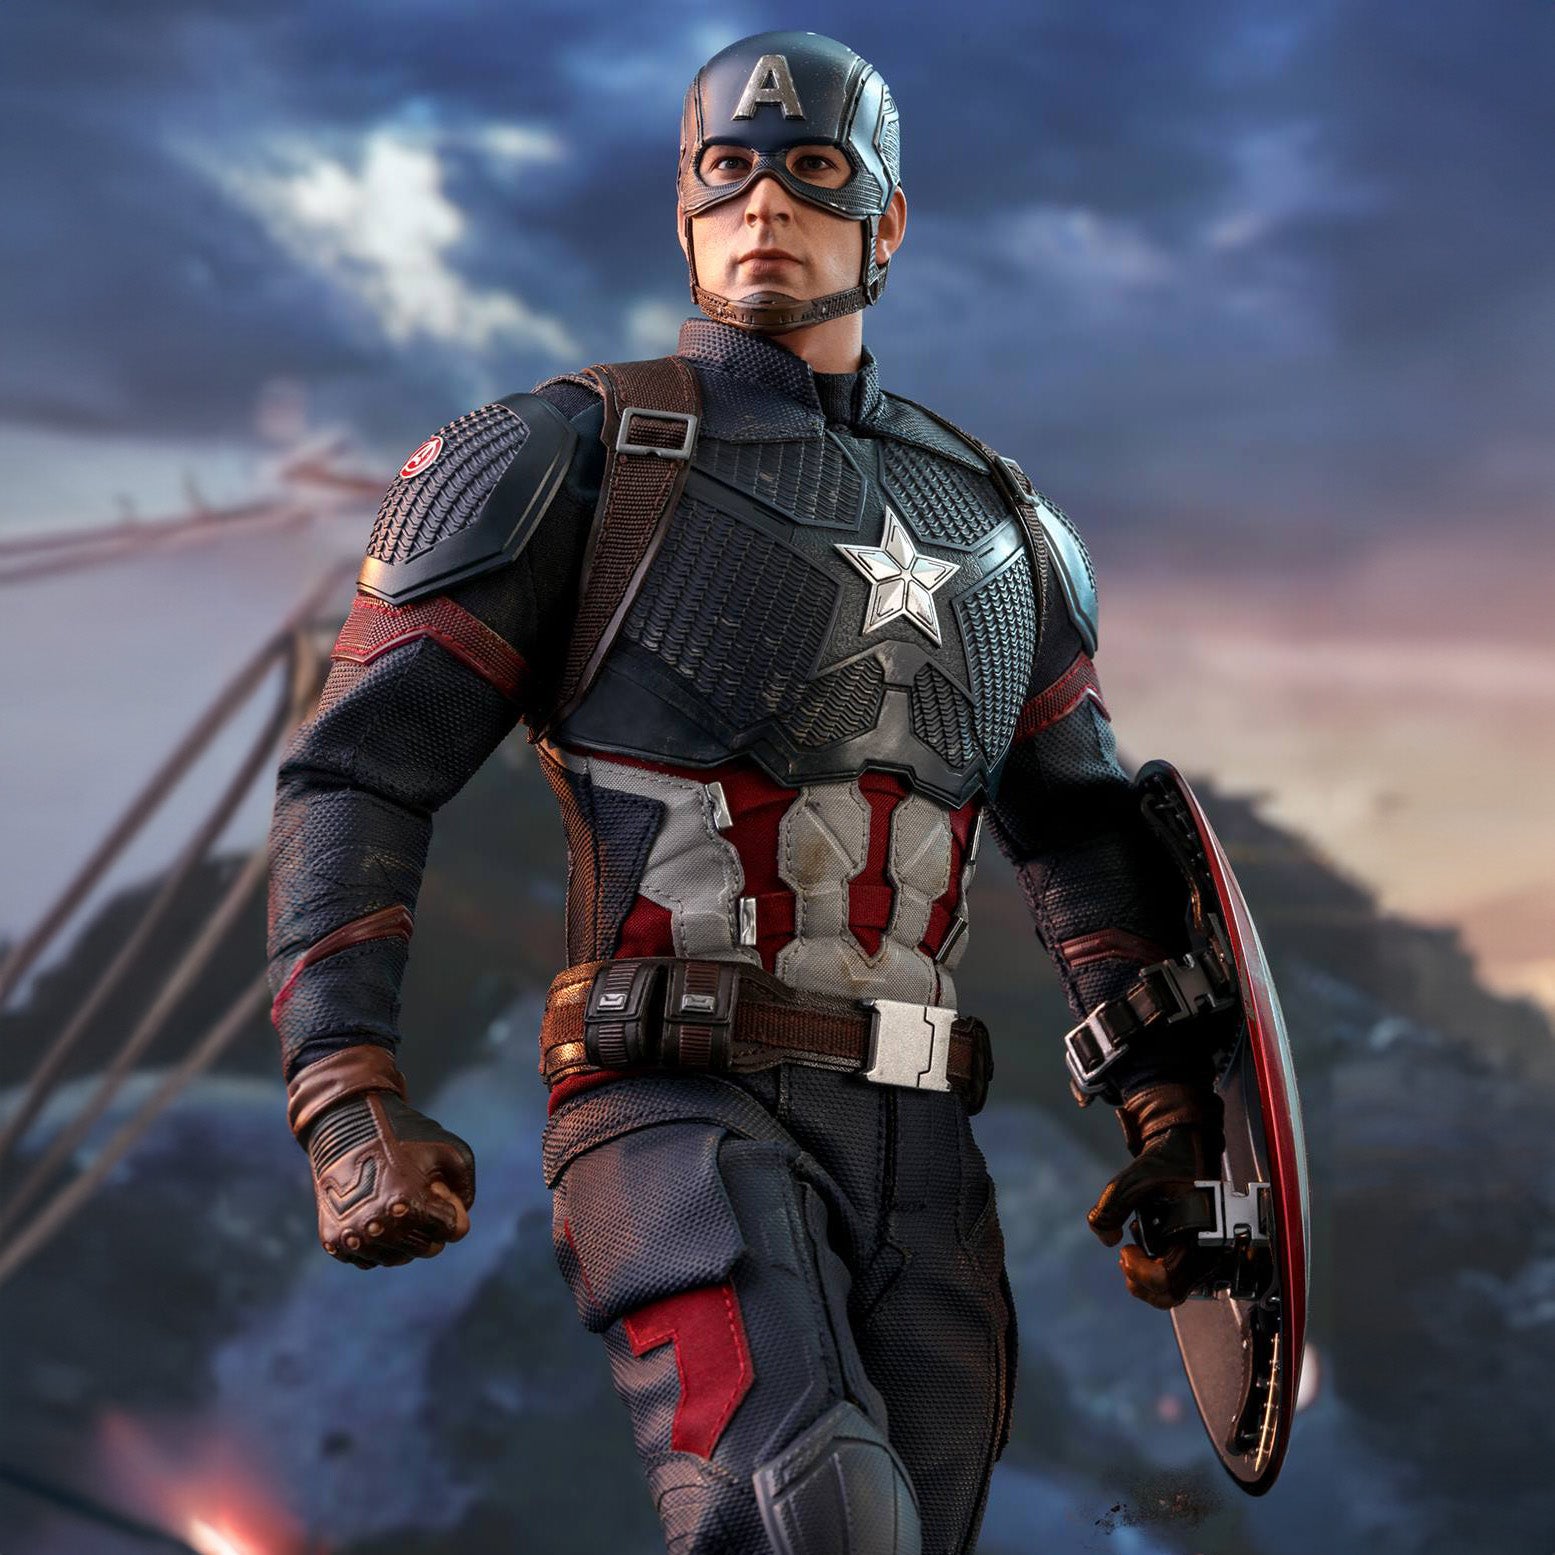 (IN STOCK) Hot Toys - MMS536 - Avengers: Endgame - Captain America